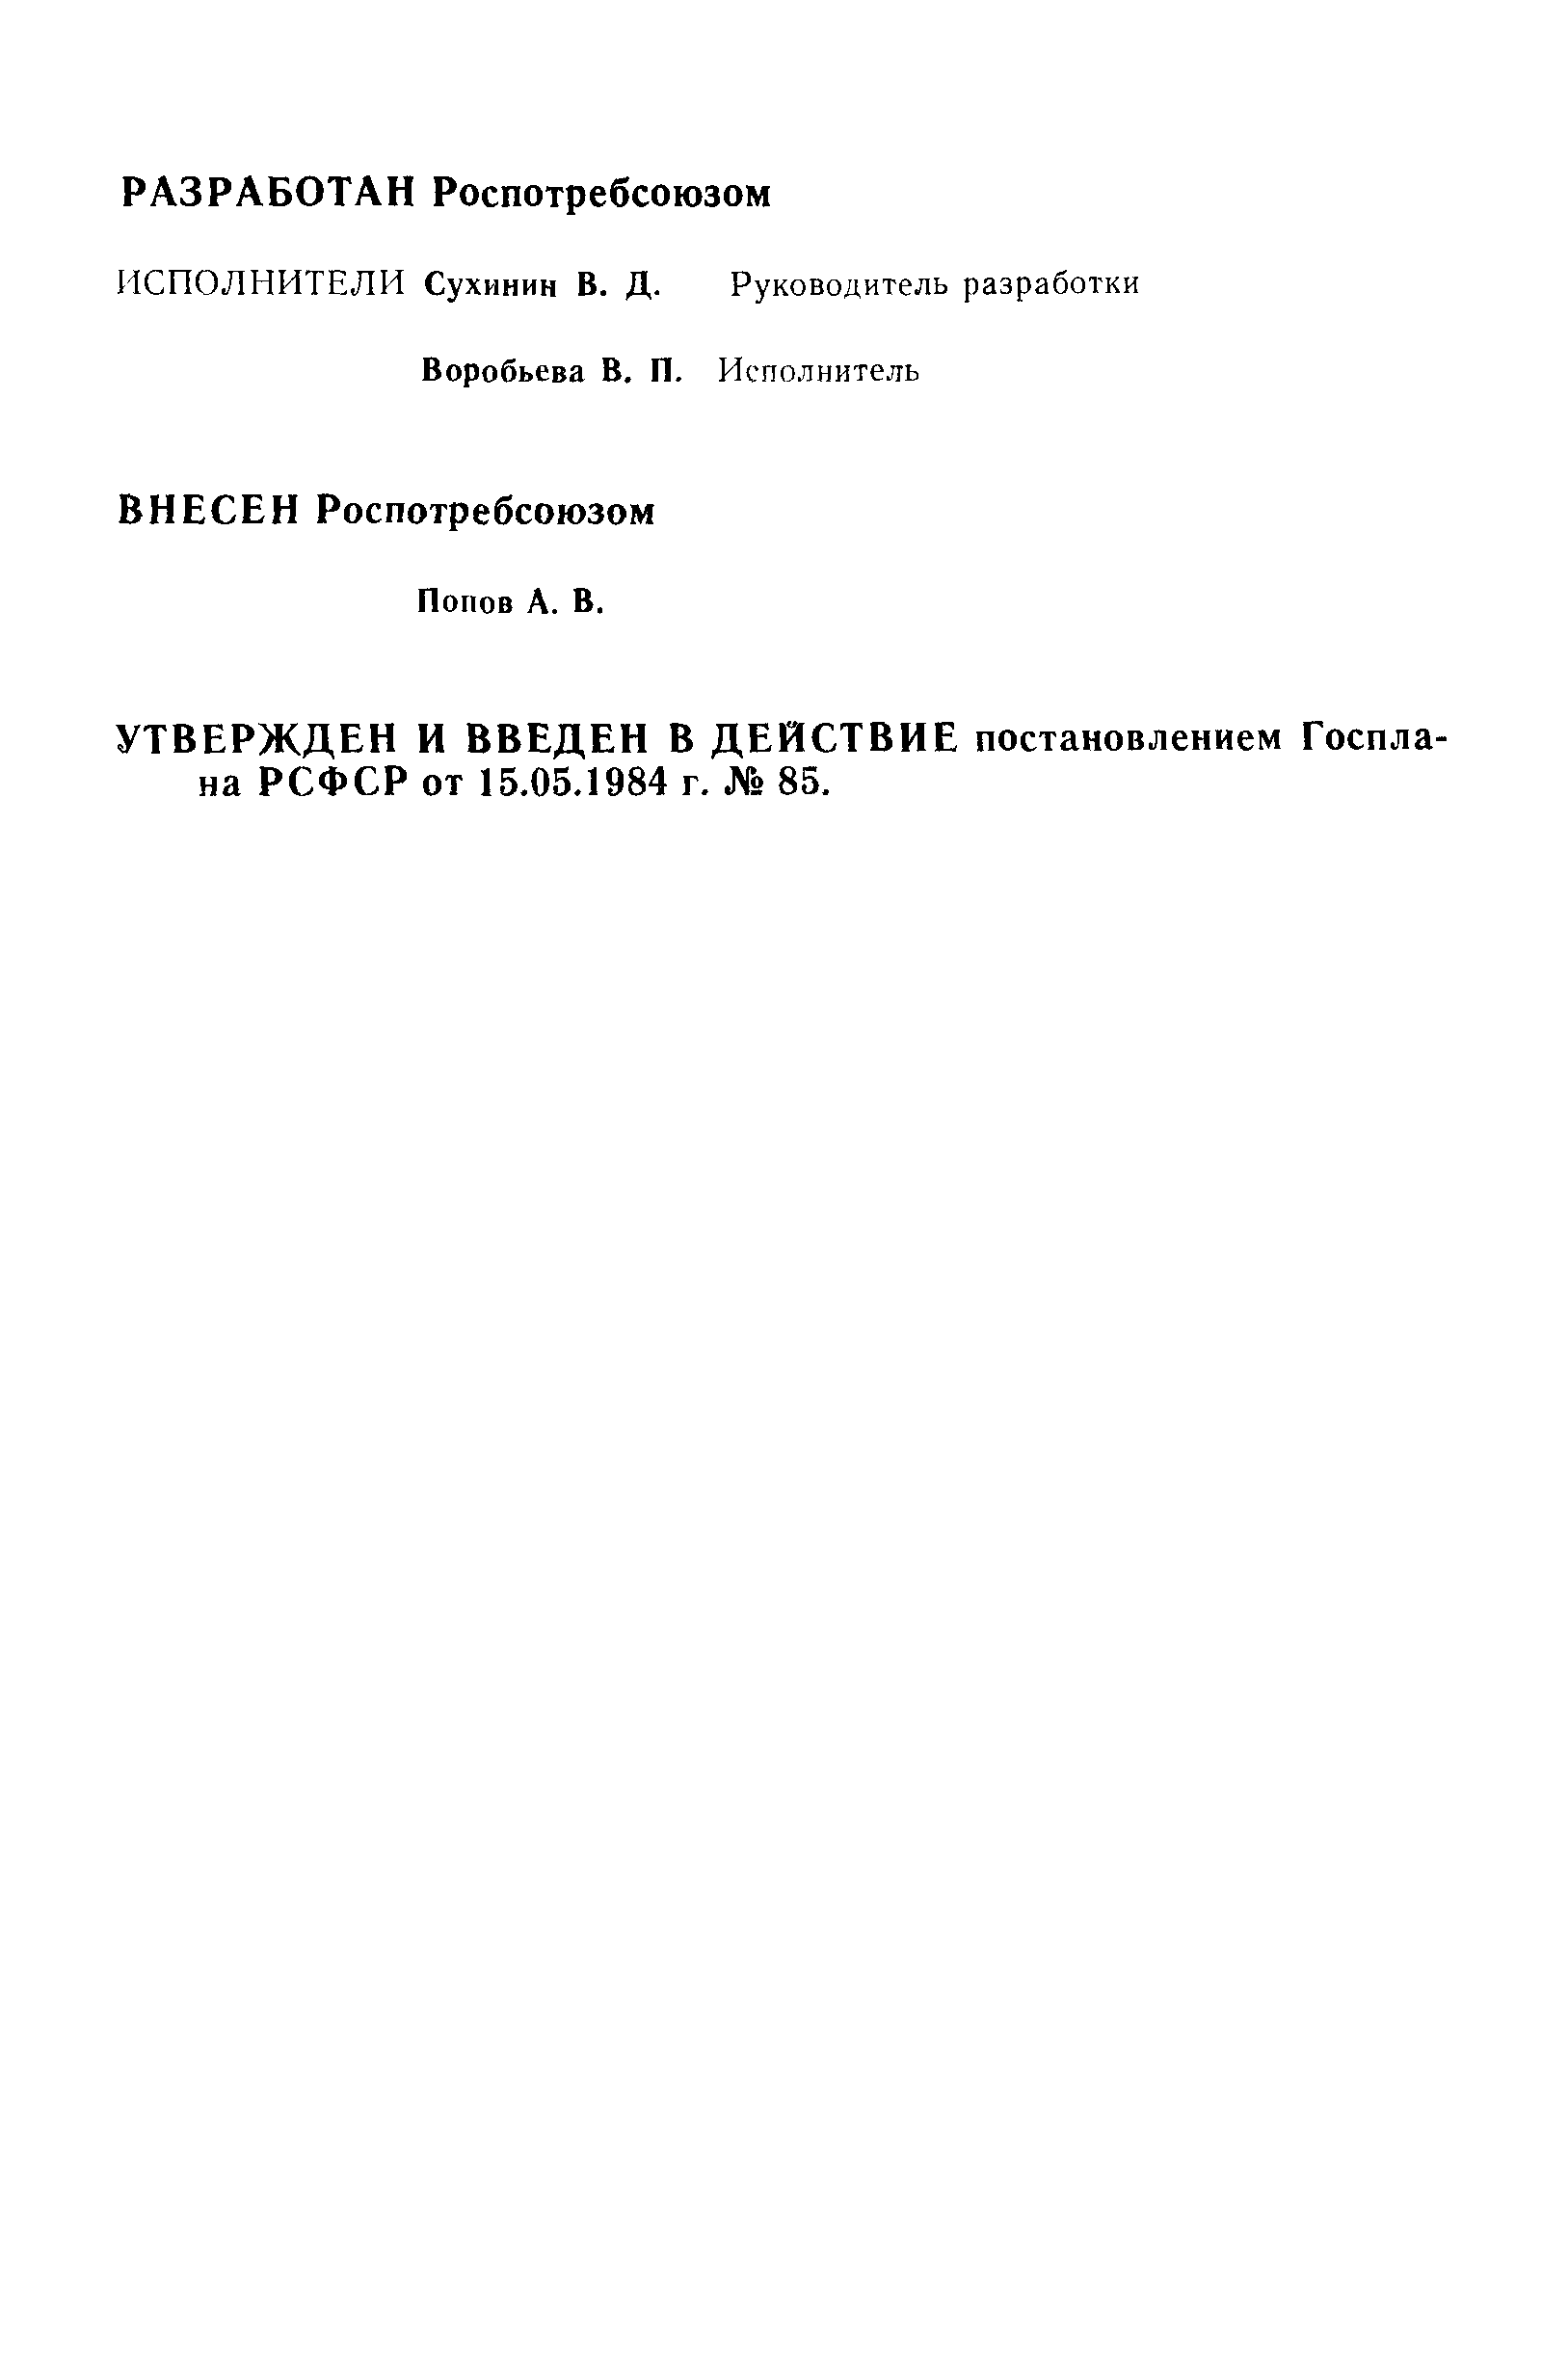 РСТ РСФСР 716-84